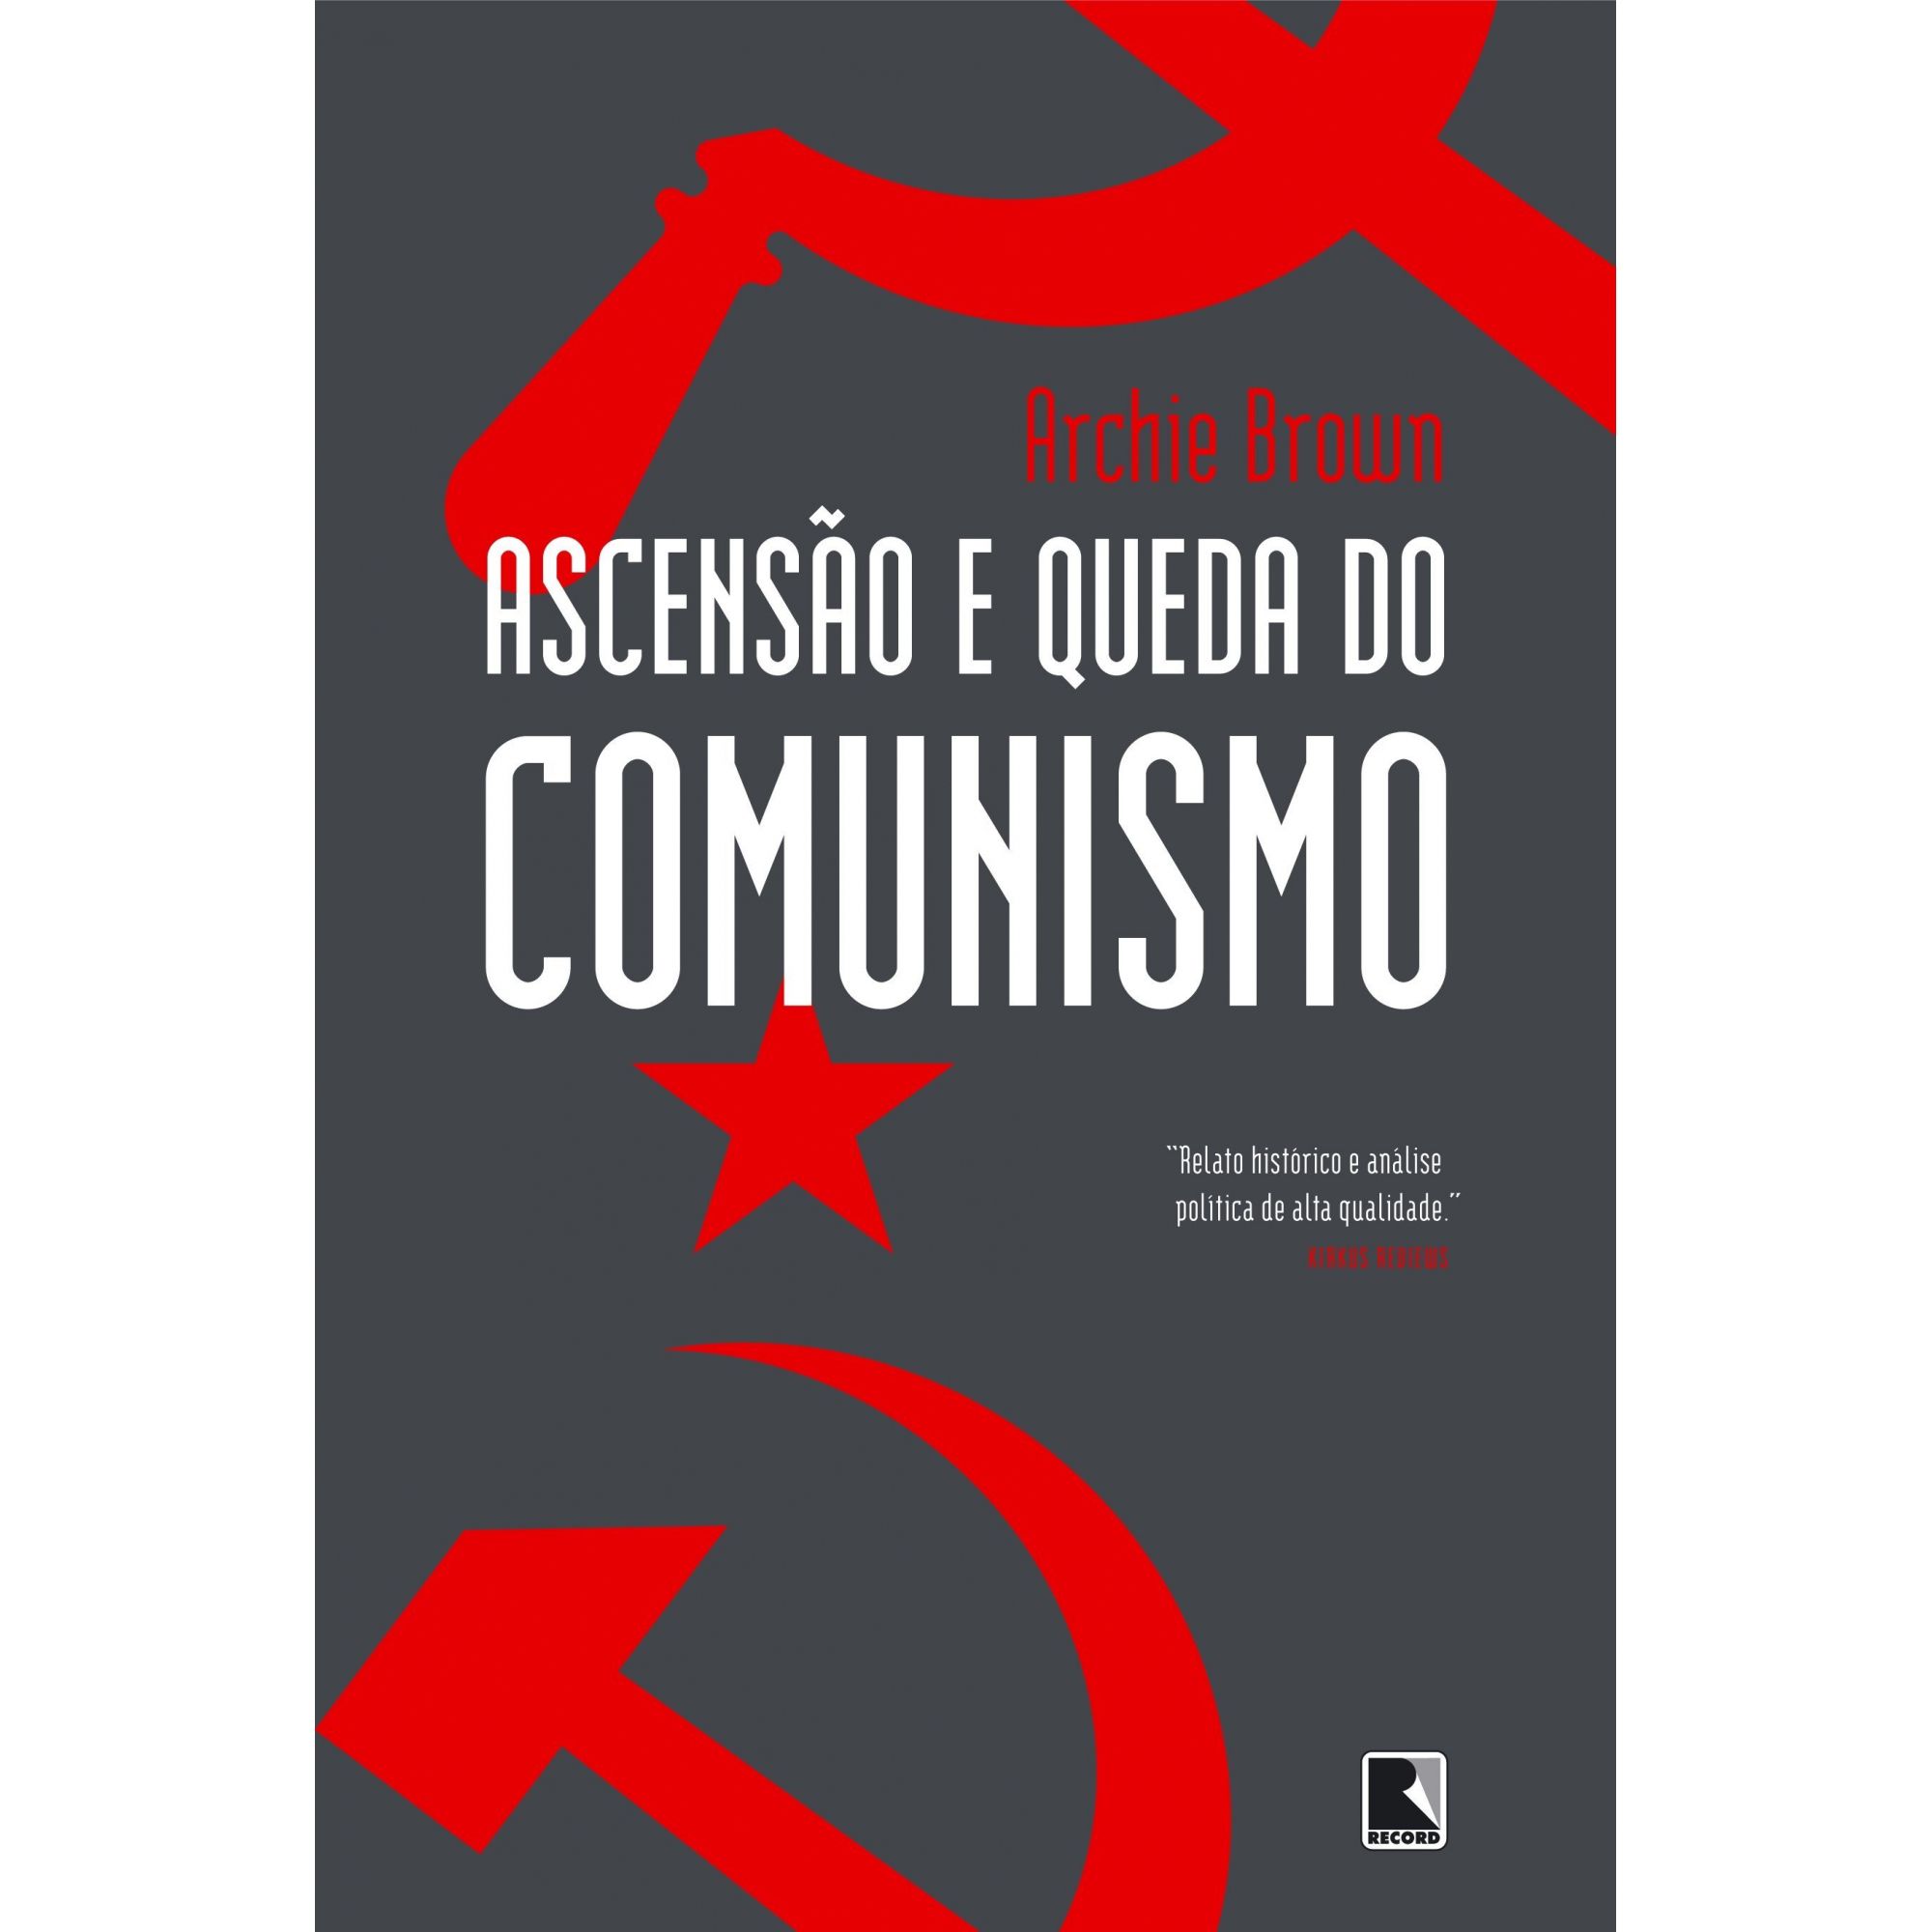 Ascensão e queda do comunismo